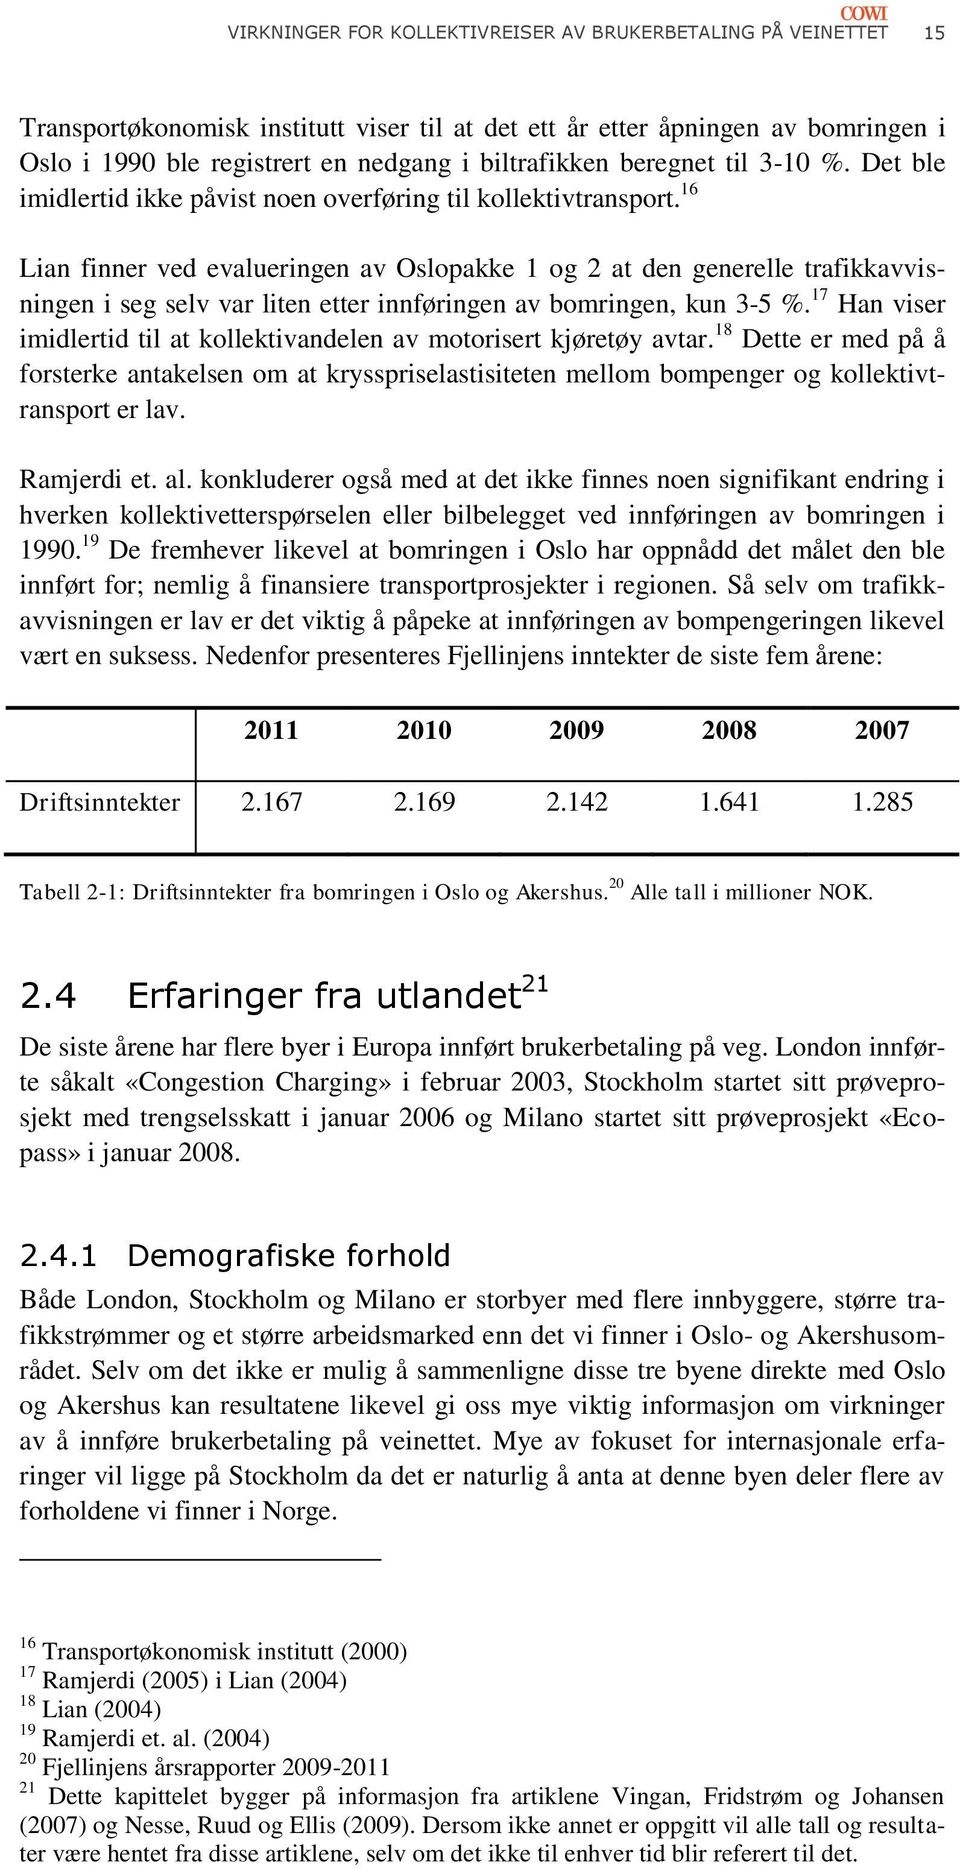 16 Lian finner ved evalueringen av Oslopakke 1 og 2 at den generelle trafikkavvisningen i seg selv var liten etter innføringen av bomringen, kun 3-5 %.